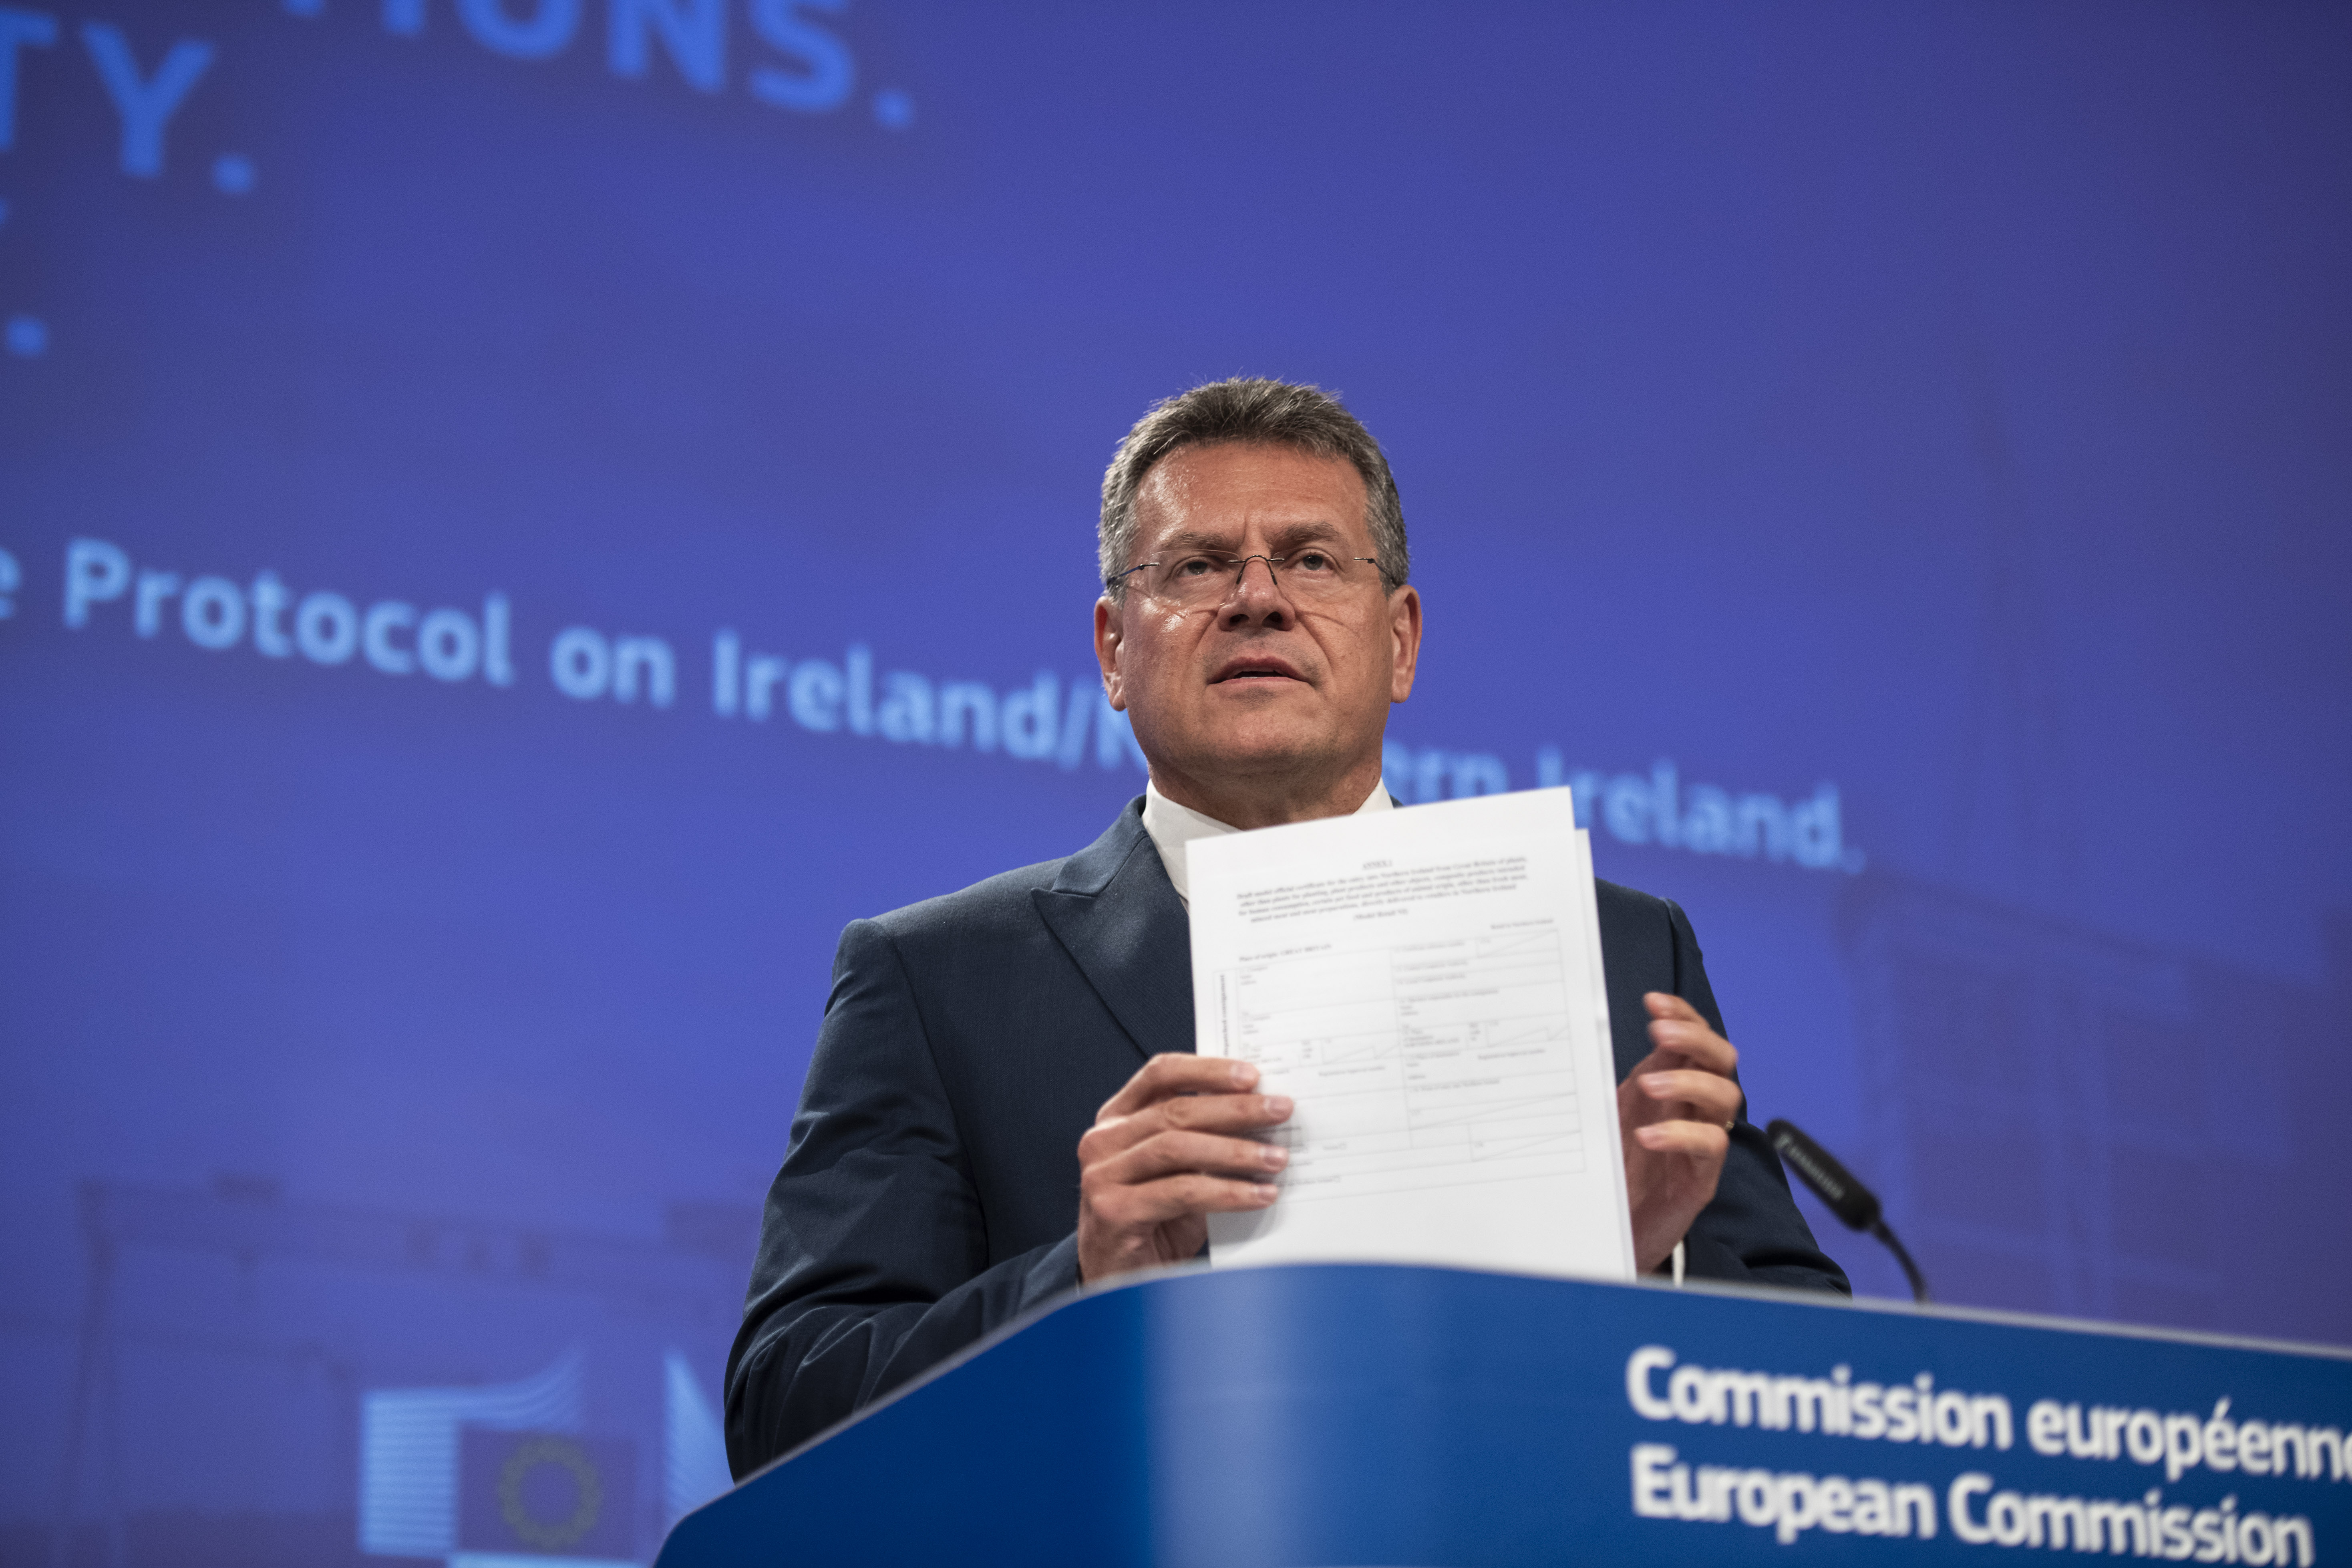 European Commission Vice-President Maroš Šefčovič